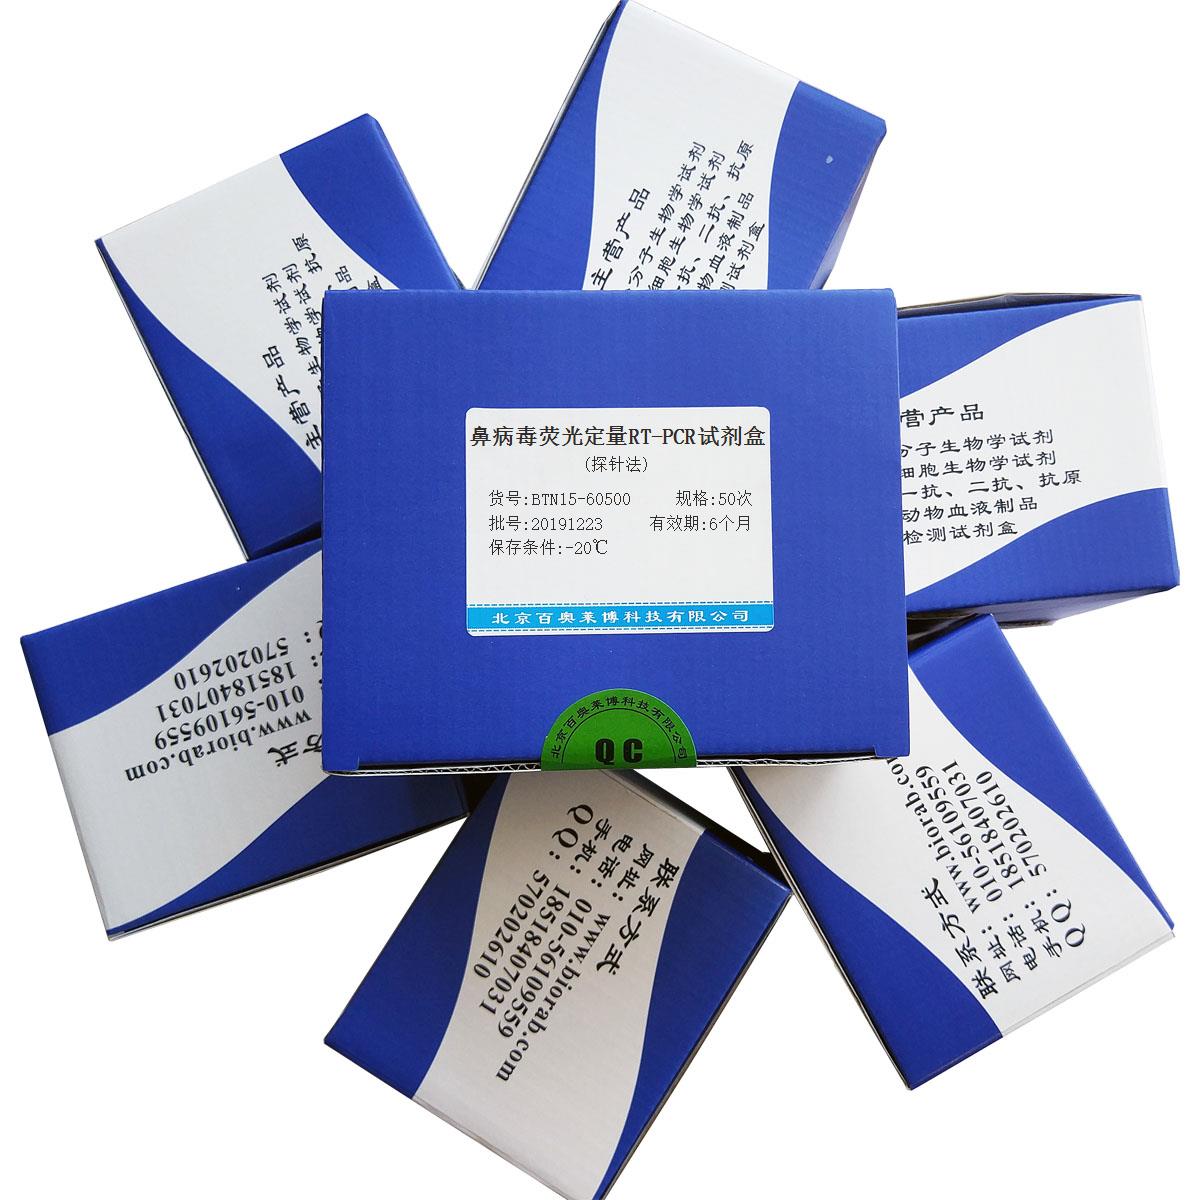 鼻病毒荧光定量RT-PCR试剂盒(探针法)